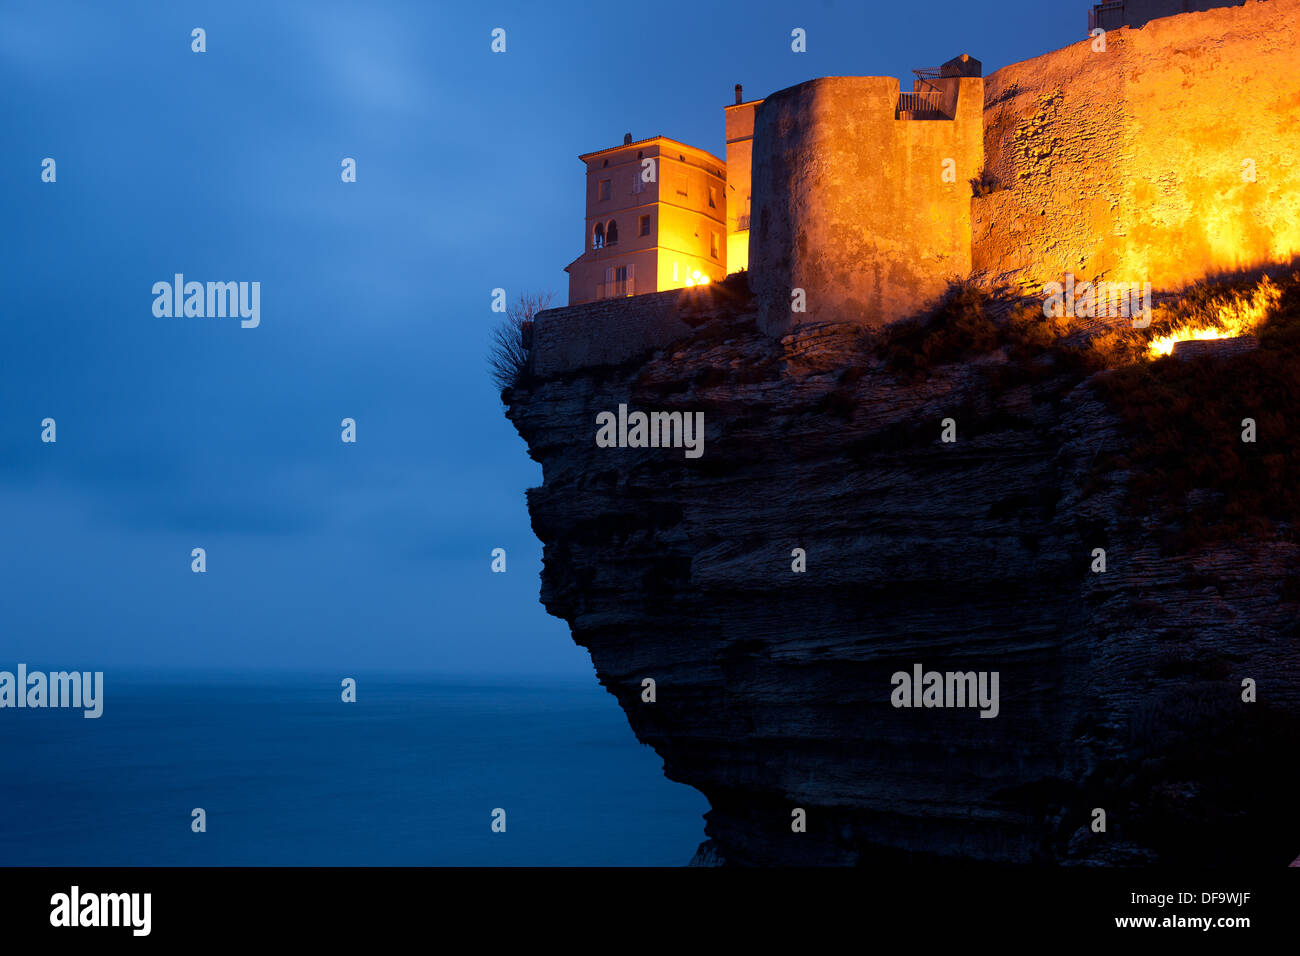 Zeitbelichtung in der Dämmerung einer Zitadelle, die über einem unglaublichen Überhang errichtet wurde. Bonifacio, Korsika, Frankreich. Stockfoto